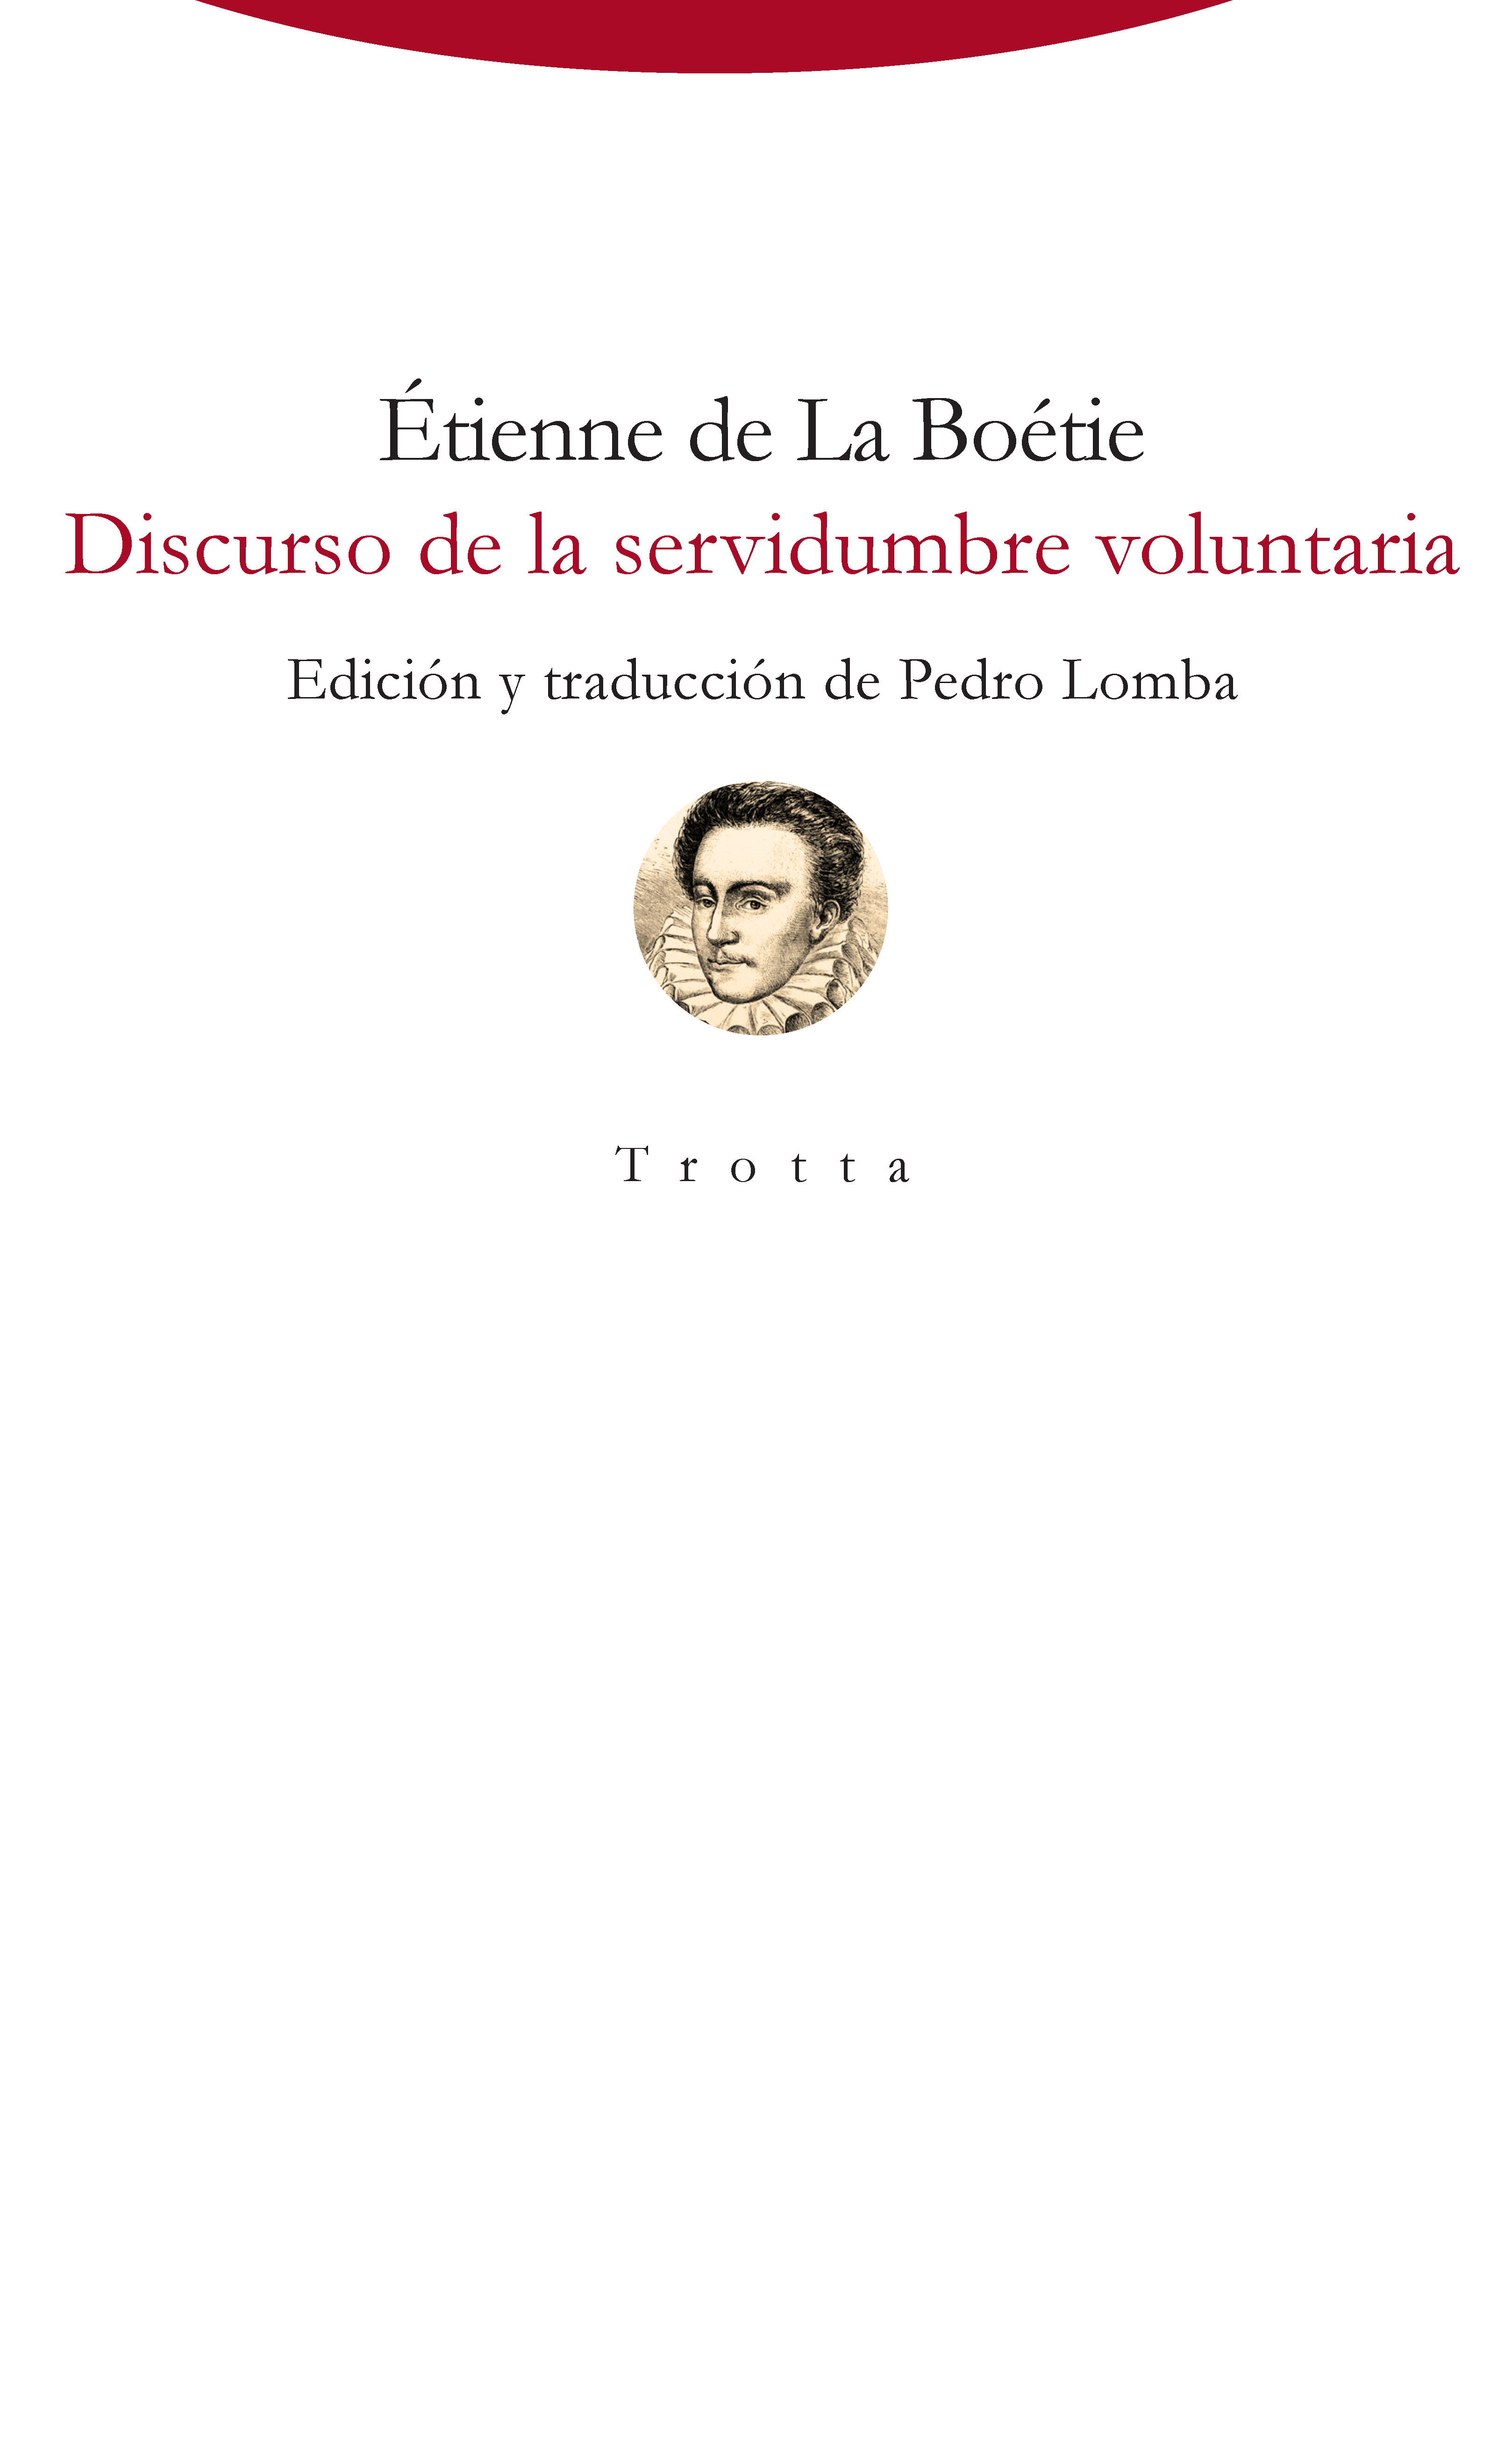 Emociónate Camino Seguro Editorial Trotta Discurso de la servidumbre voluntaria | Étienne de La  Boétie | 978-84-9879-805-0